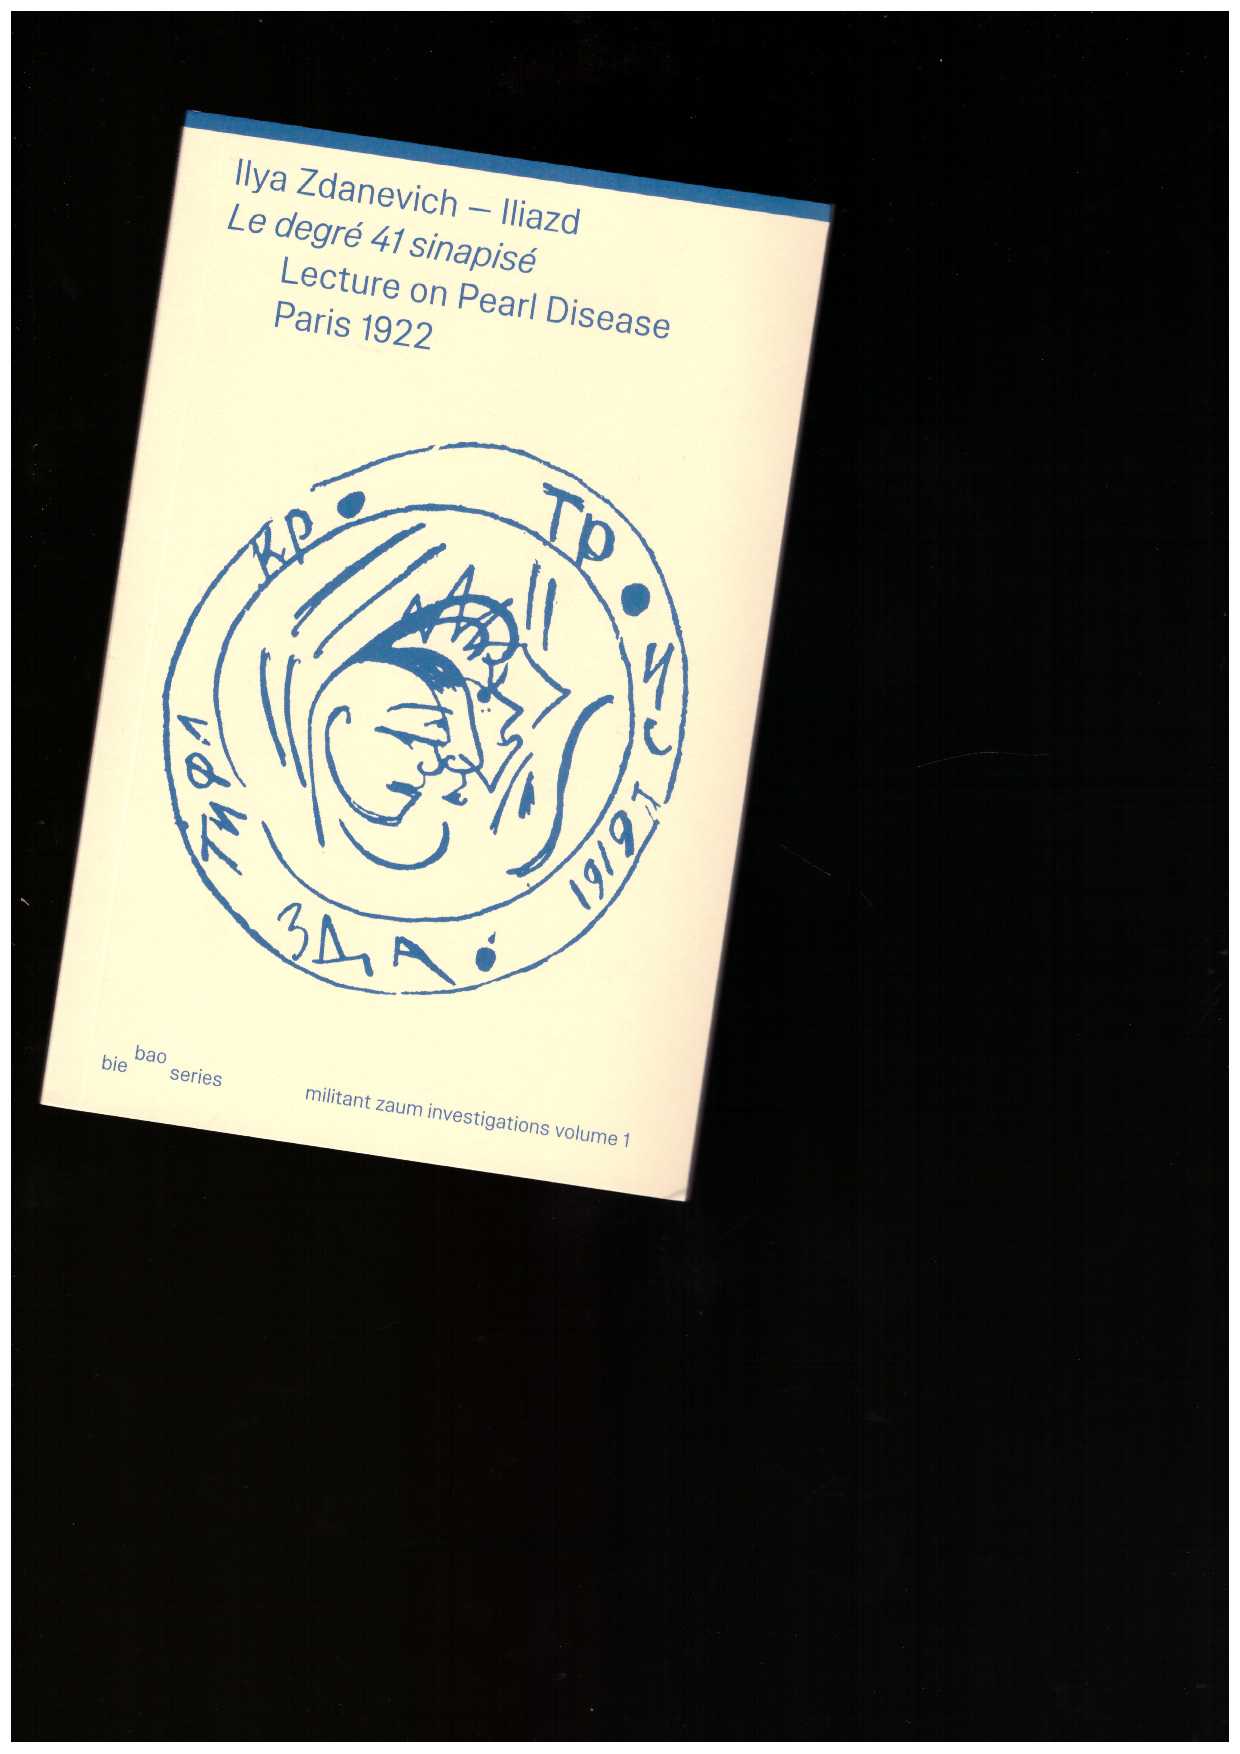 ZDANEVICH, Ilya (ILIAZD) - Le degré 41 sinapisé – Lecture on Pearl Disease, Paris 1922